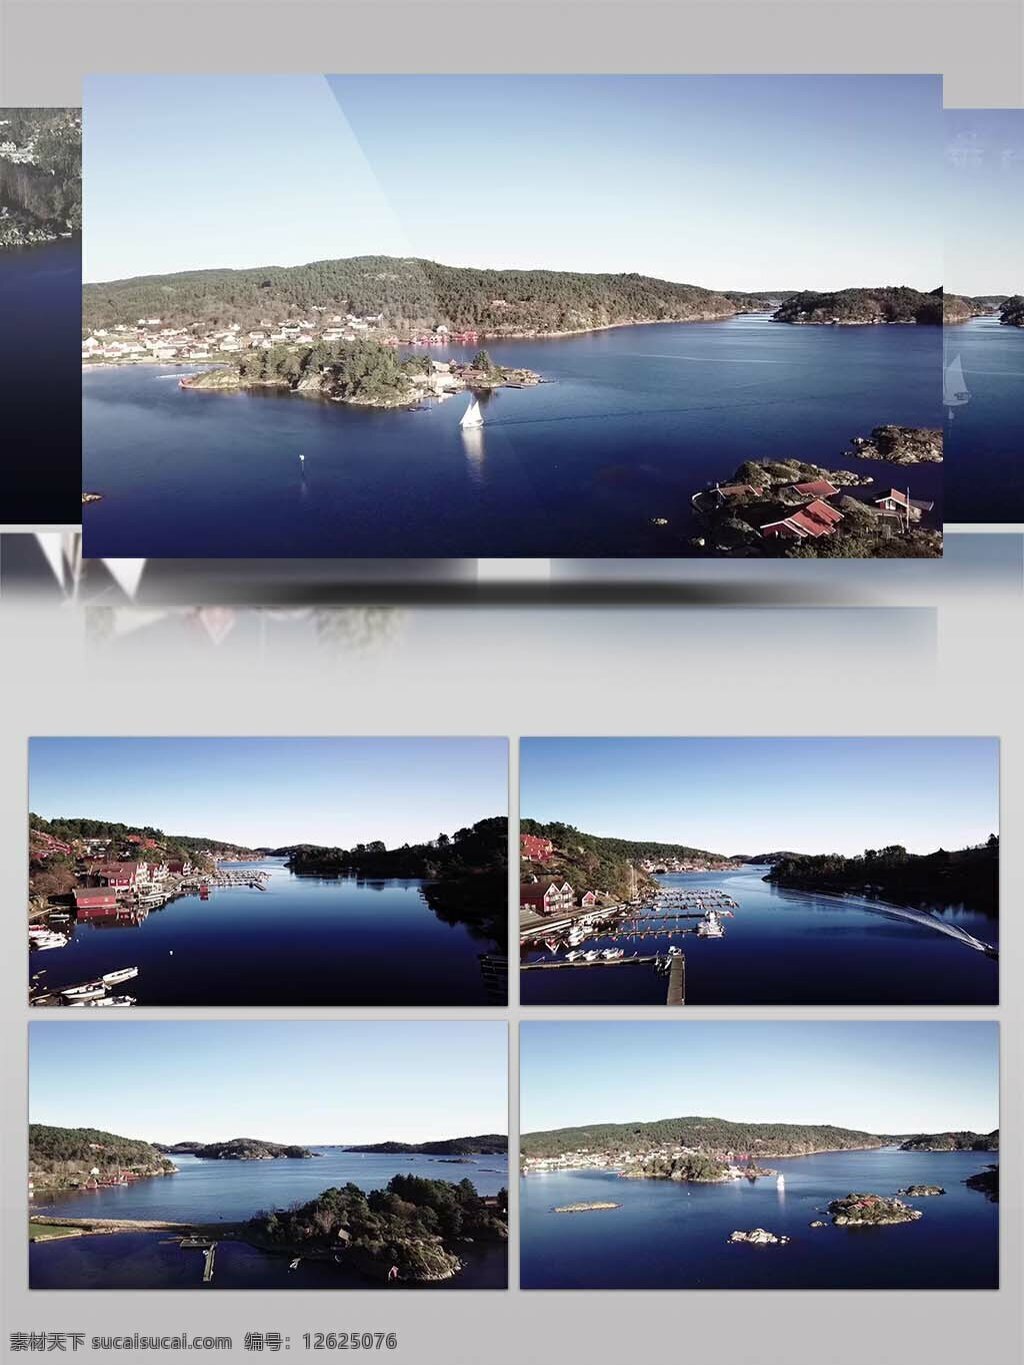 4k 航拍 挪威 唯美 景观 视频 挪威风光 风景北极 延时摄影 雪上冰山 极光 纯净 纯洁 自然风光 挪威风景 森林河流 湖泊 湖水倒影 挪威景点